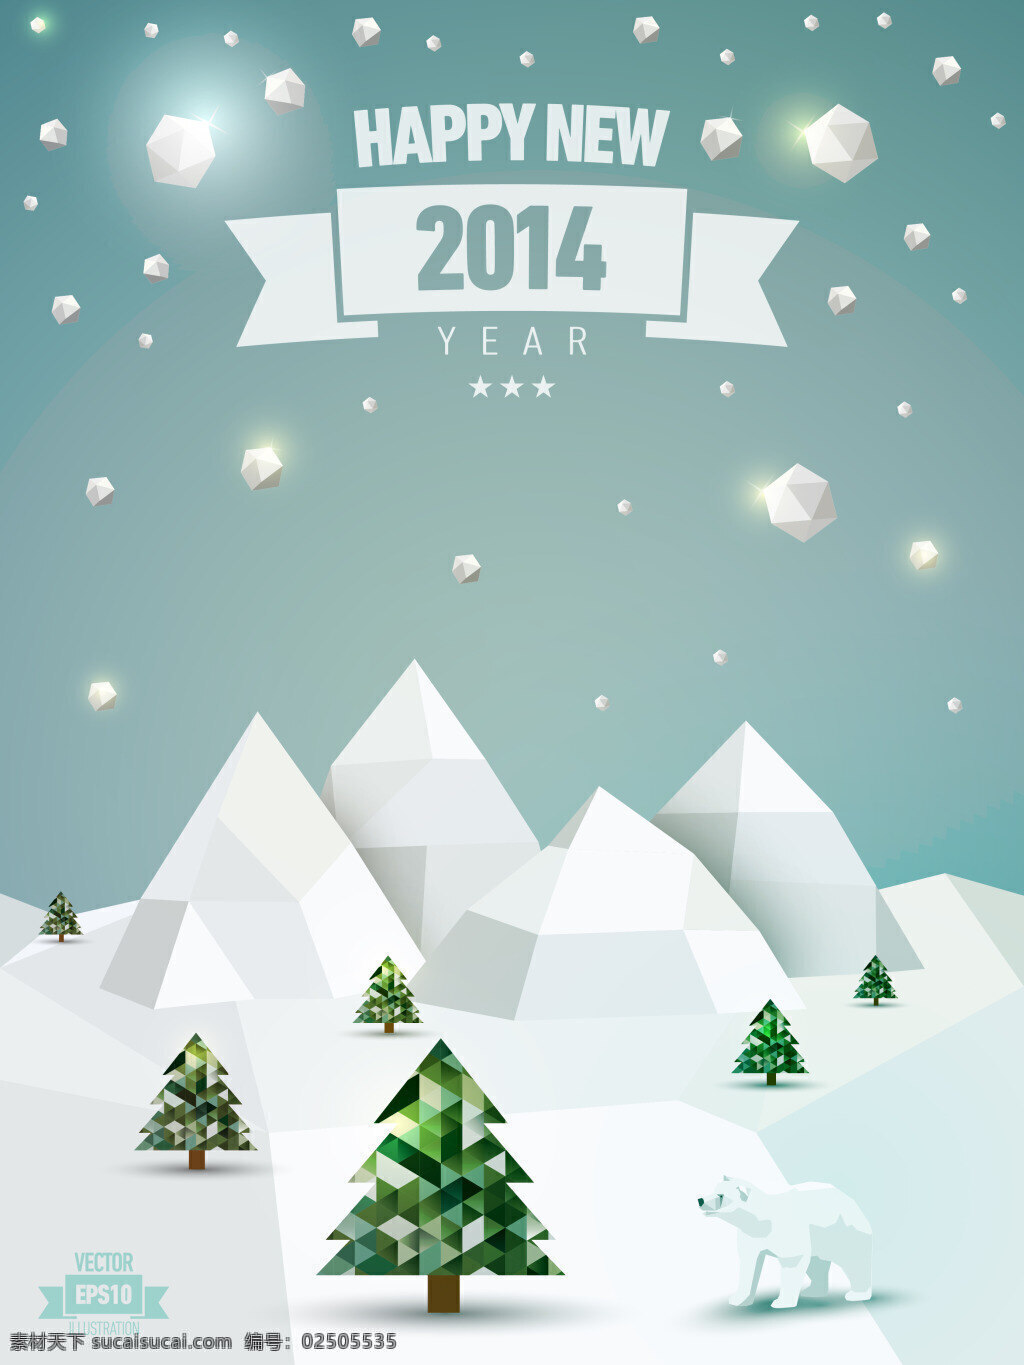 森林 雪原 温暖 背景 冰山 插画 春节 冬季 海报背景 林海雪原 瑞雪兆丰年 圣诞 下雪 星光